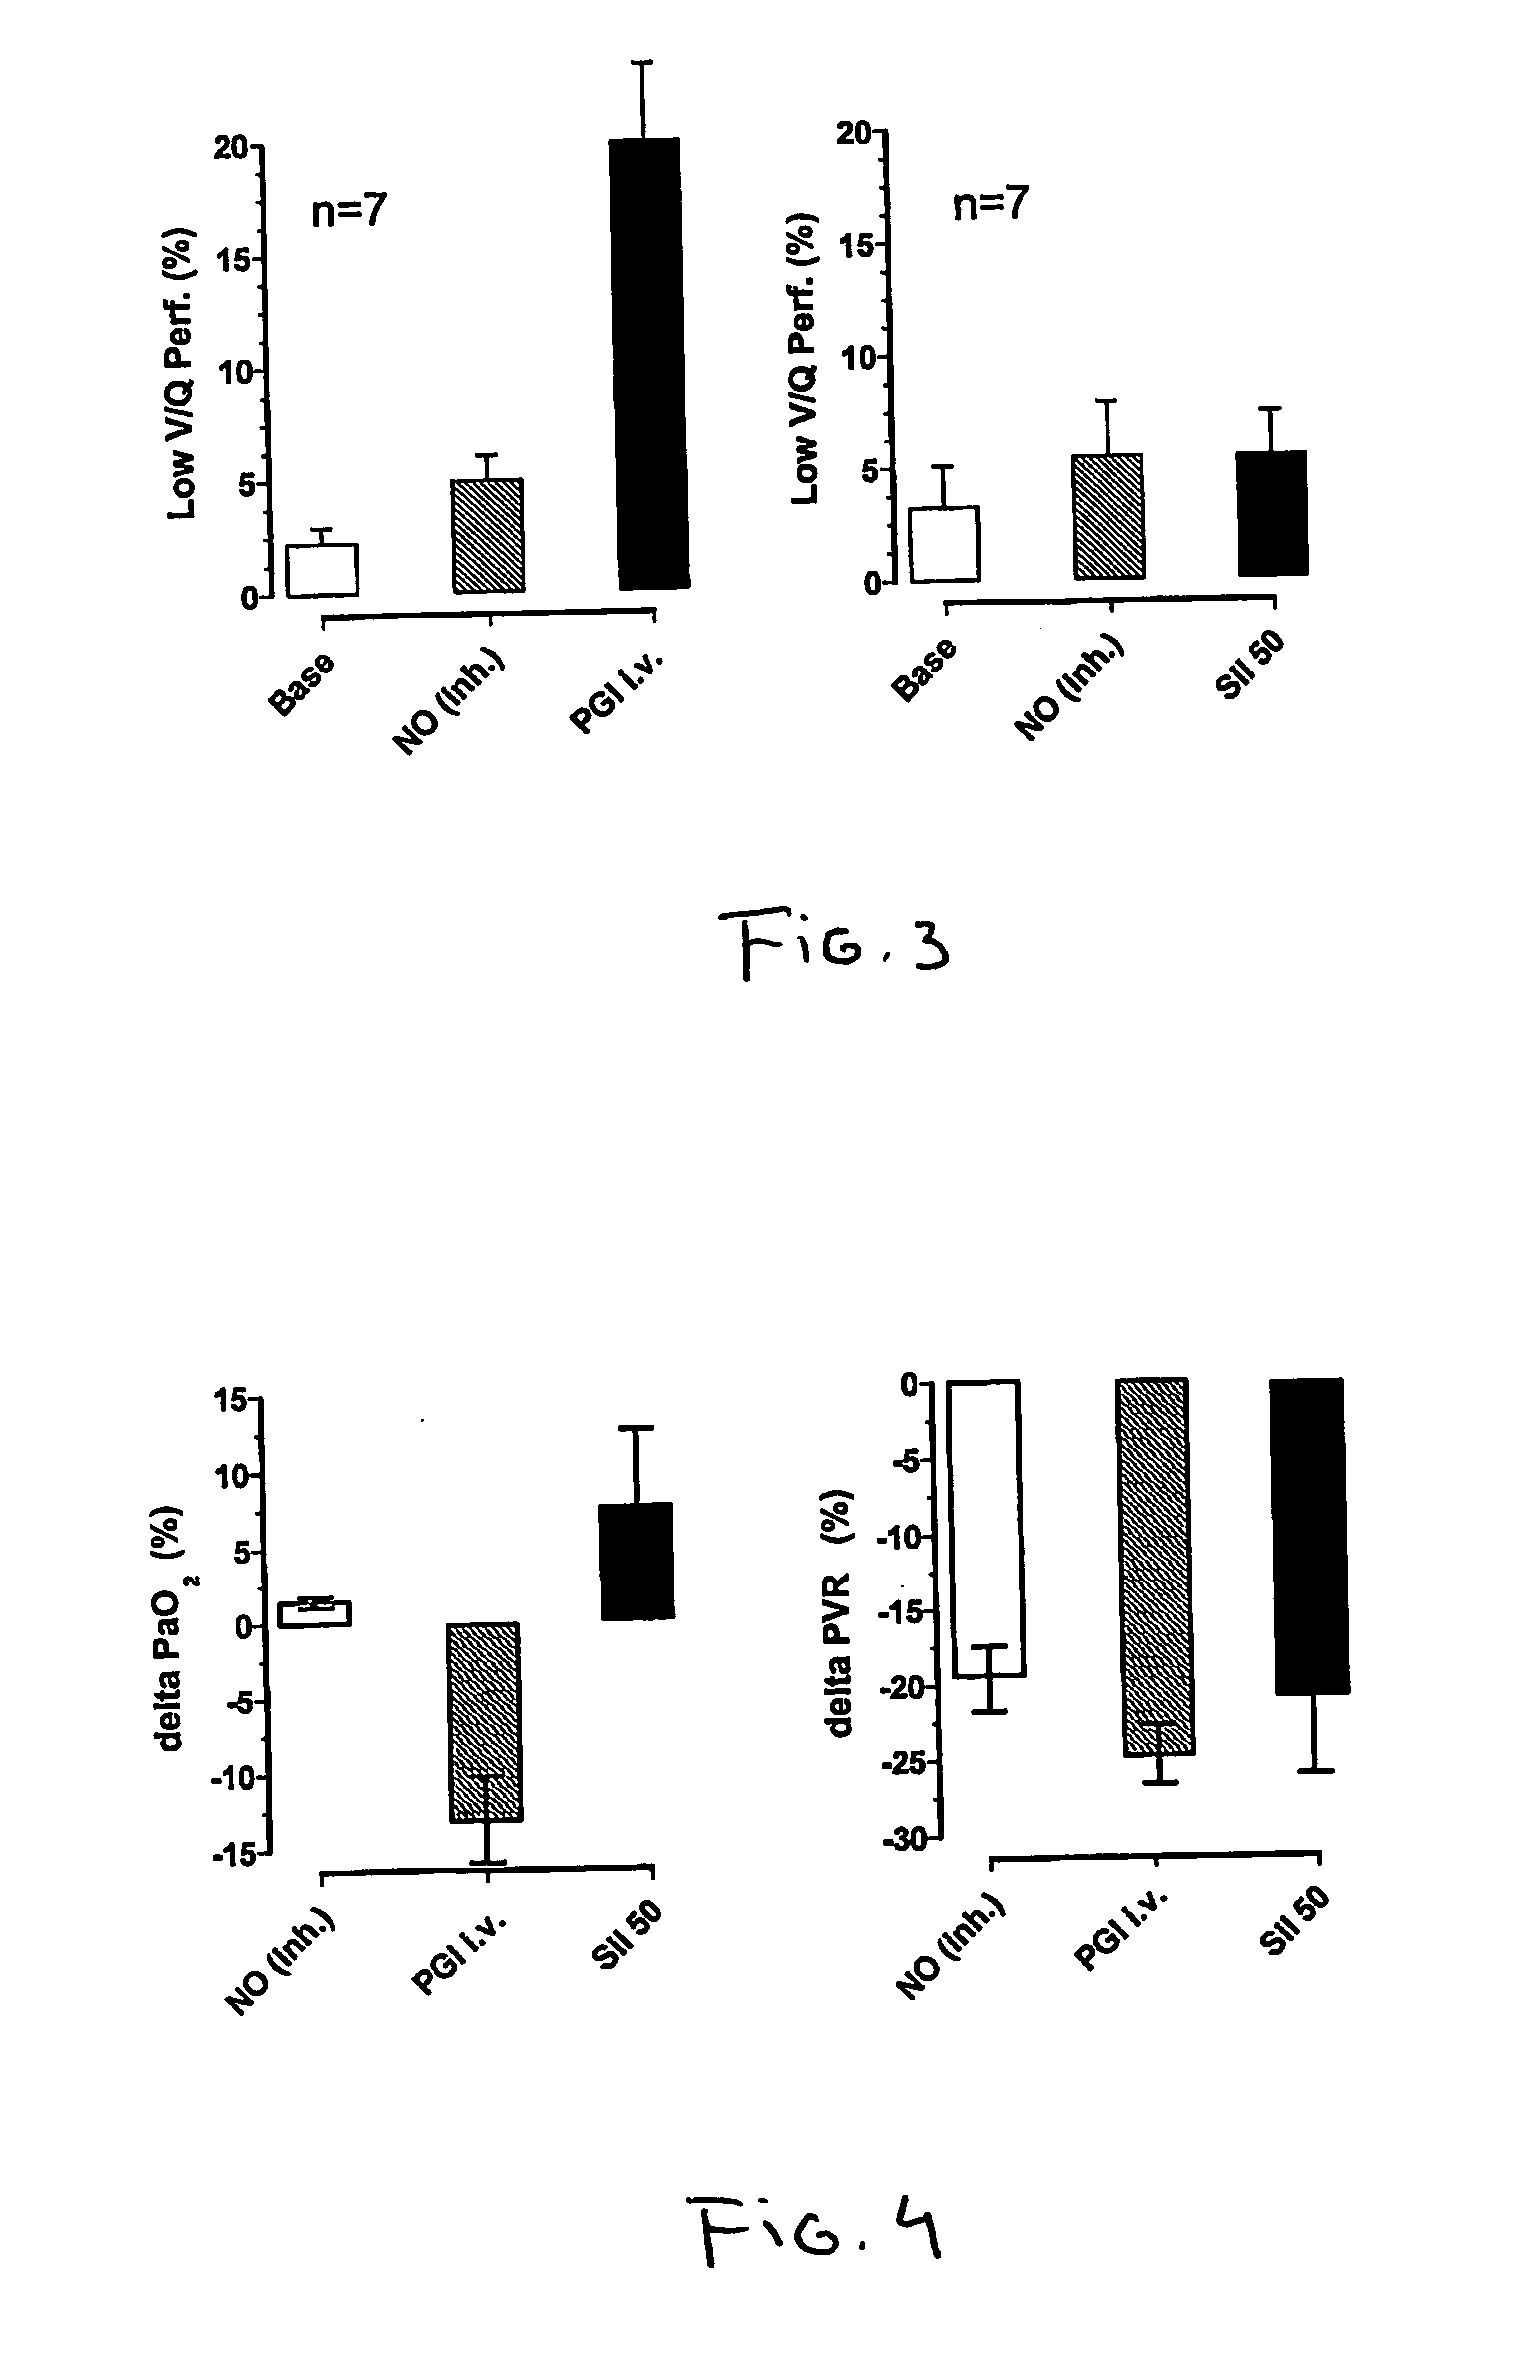 Novel use of selective pde5 inhibitors